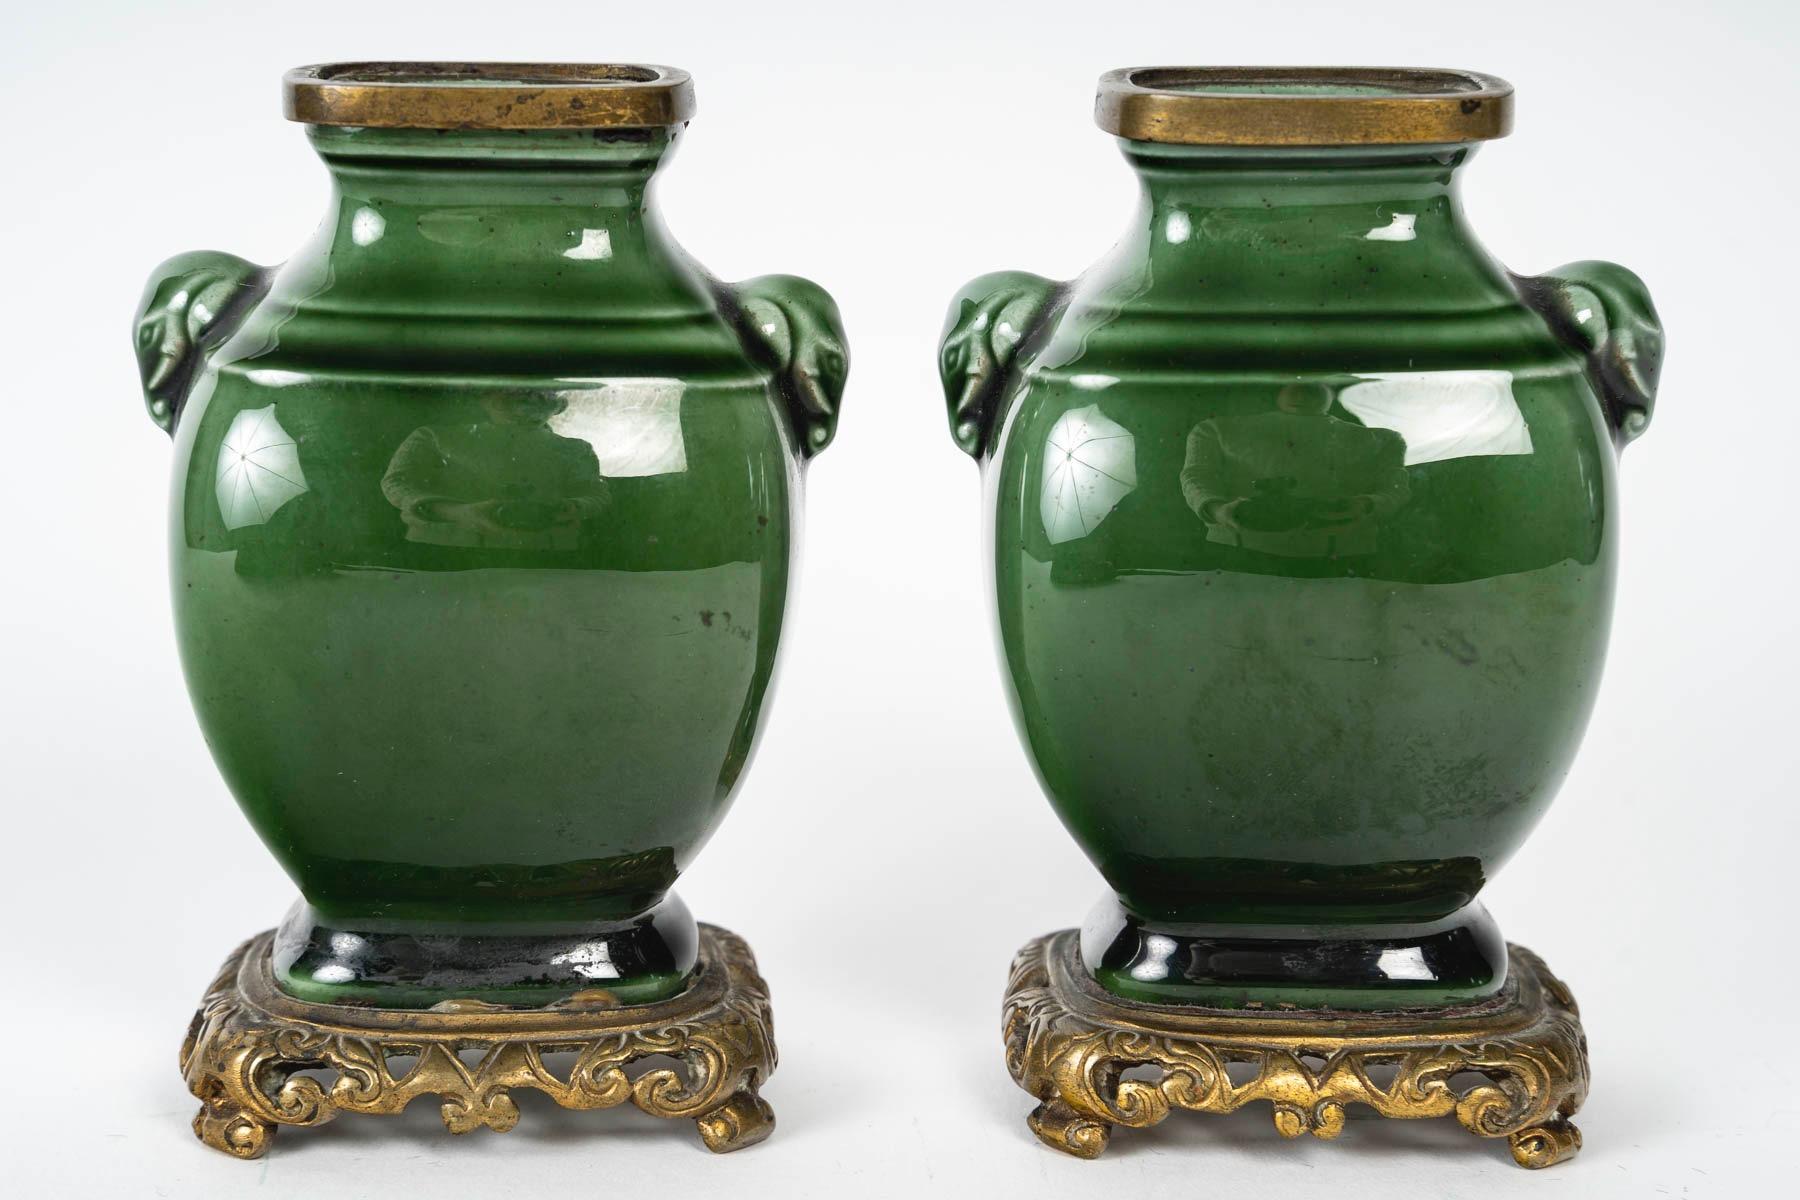 Théodore Deck (1823-1891), Miniature Fayence-Vasenpaar um 1870